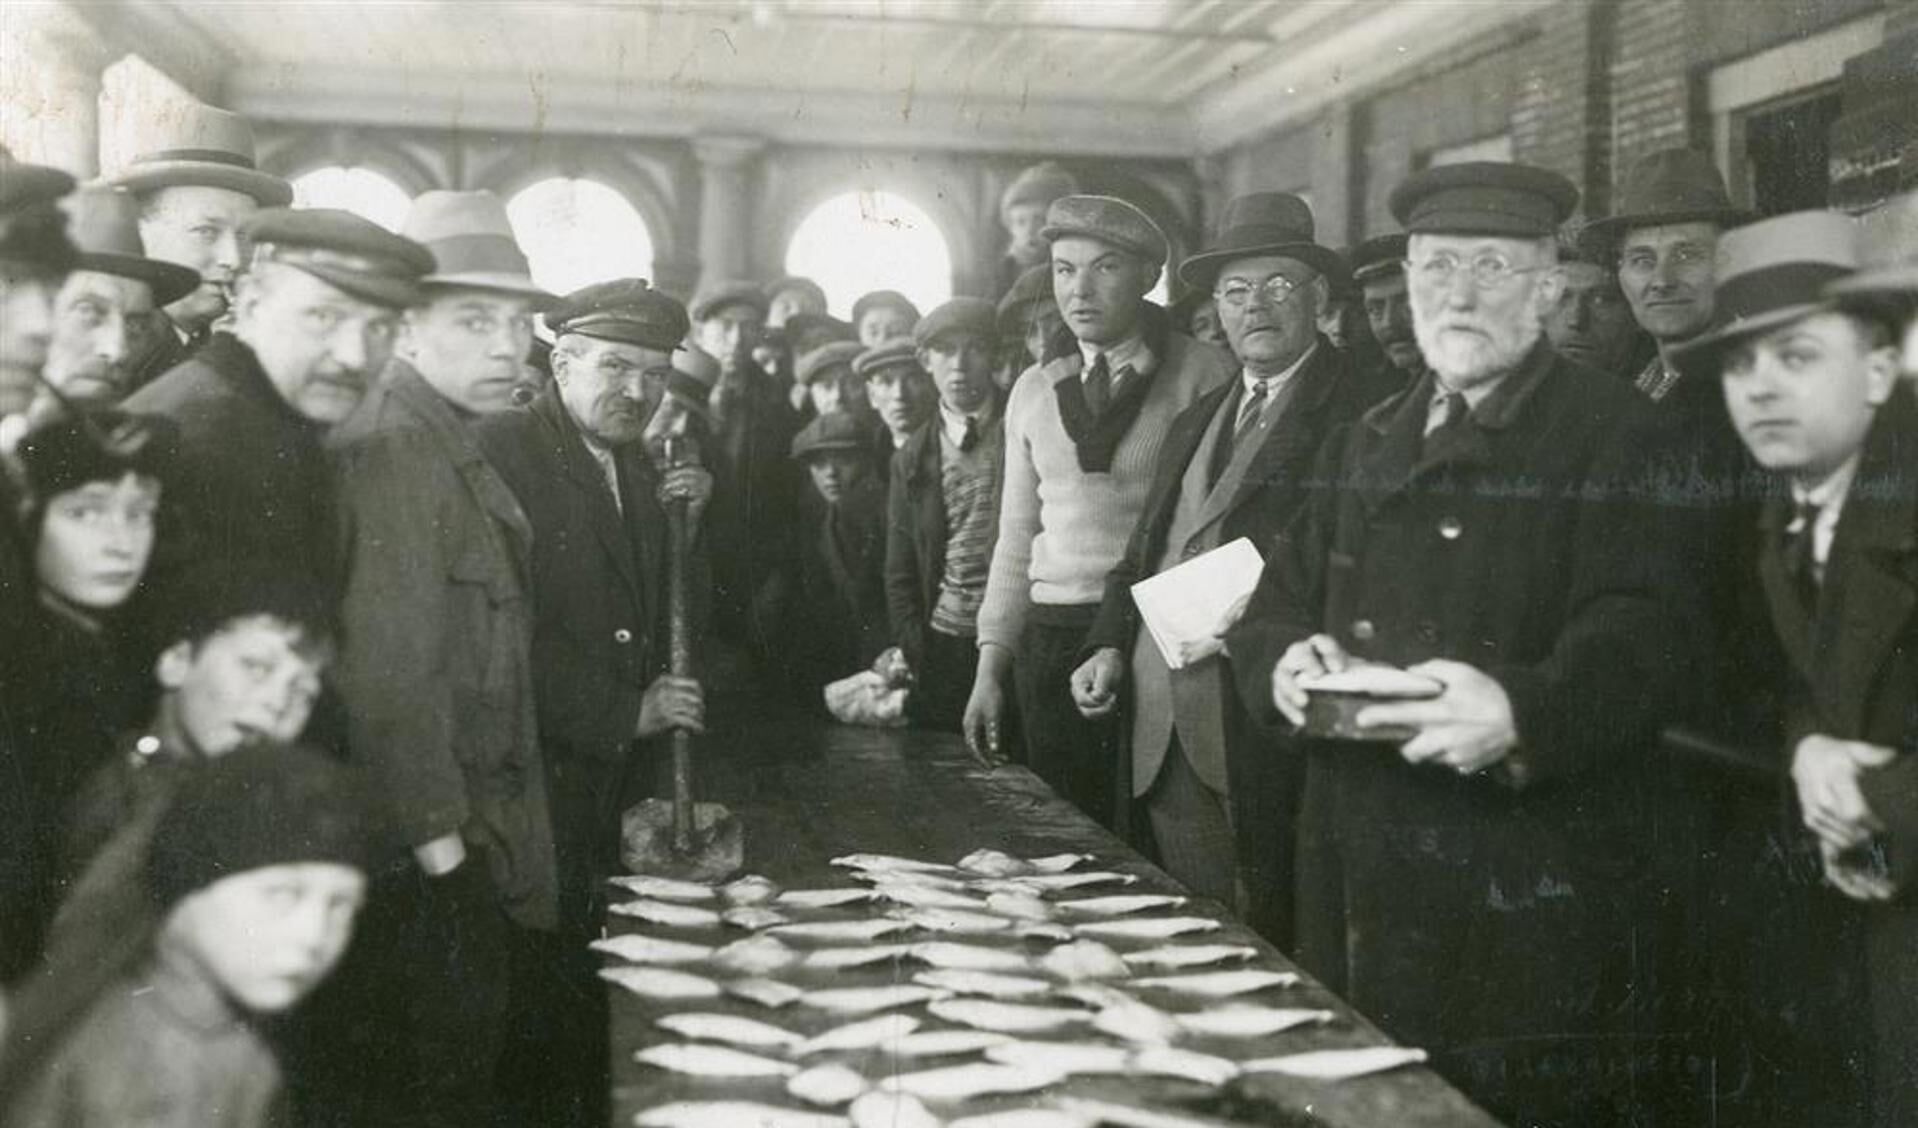 Visafslag onder de overkapping van de Visbank, circa 1931